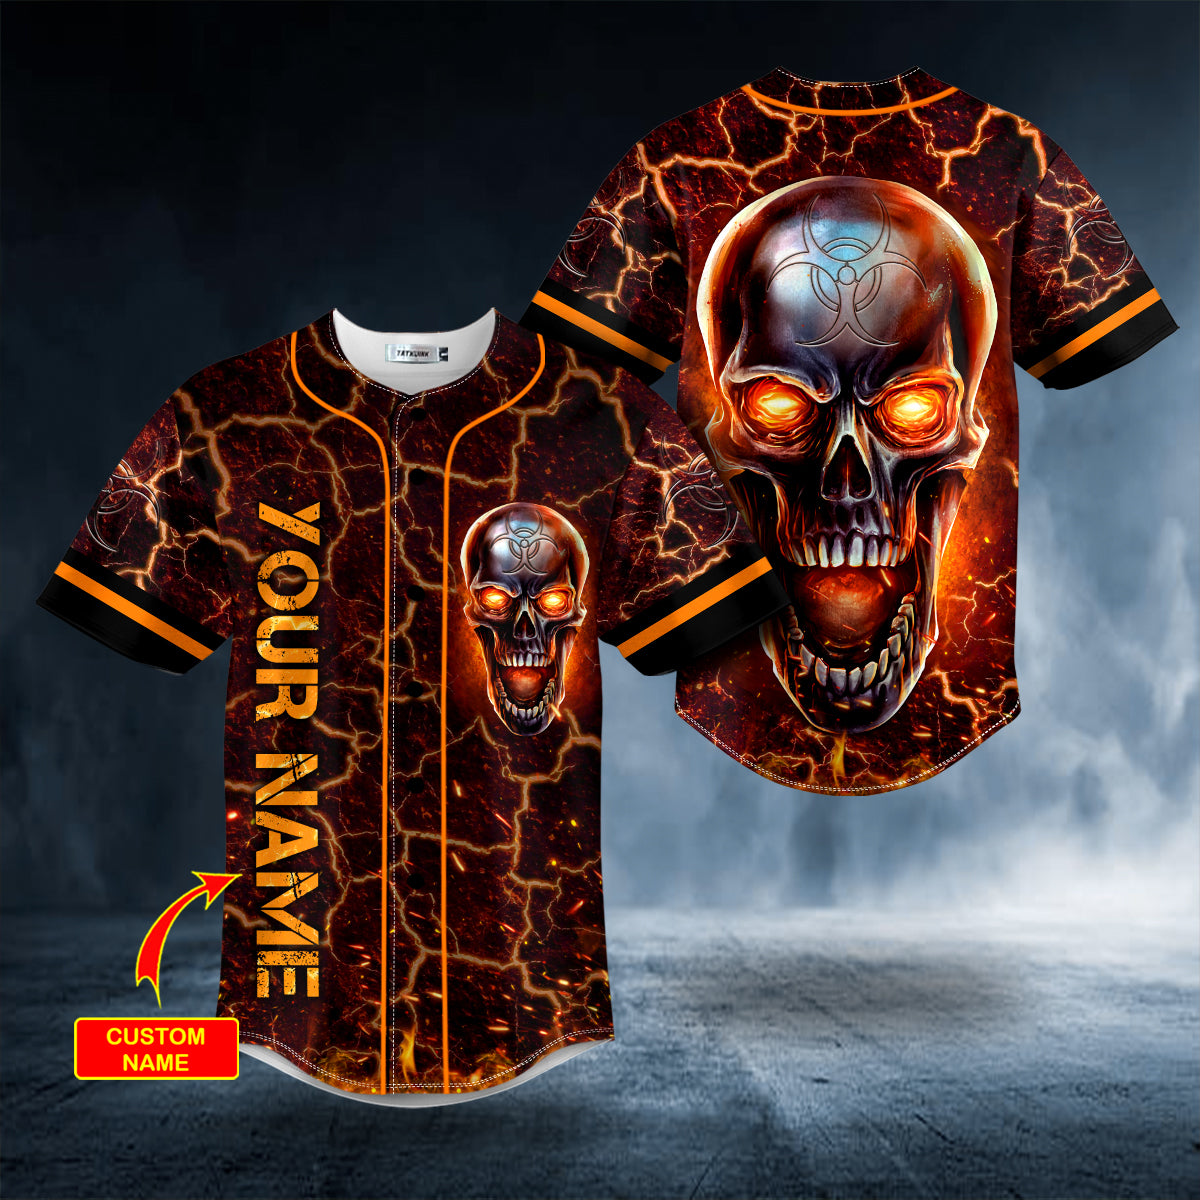 fire metallic biohazard skull custom baseball jersey bsj 957 1tpkq